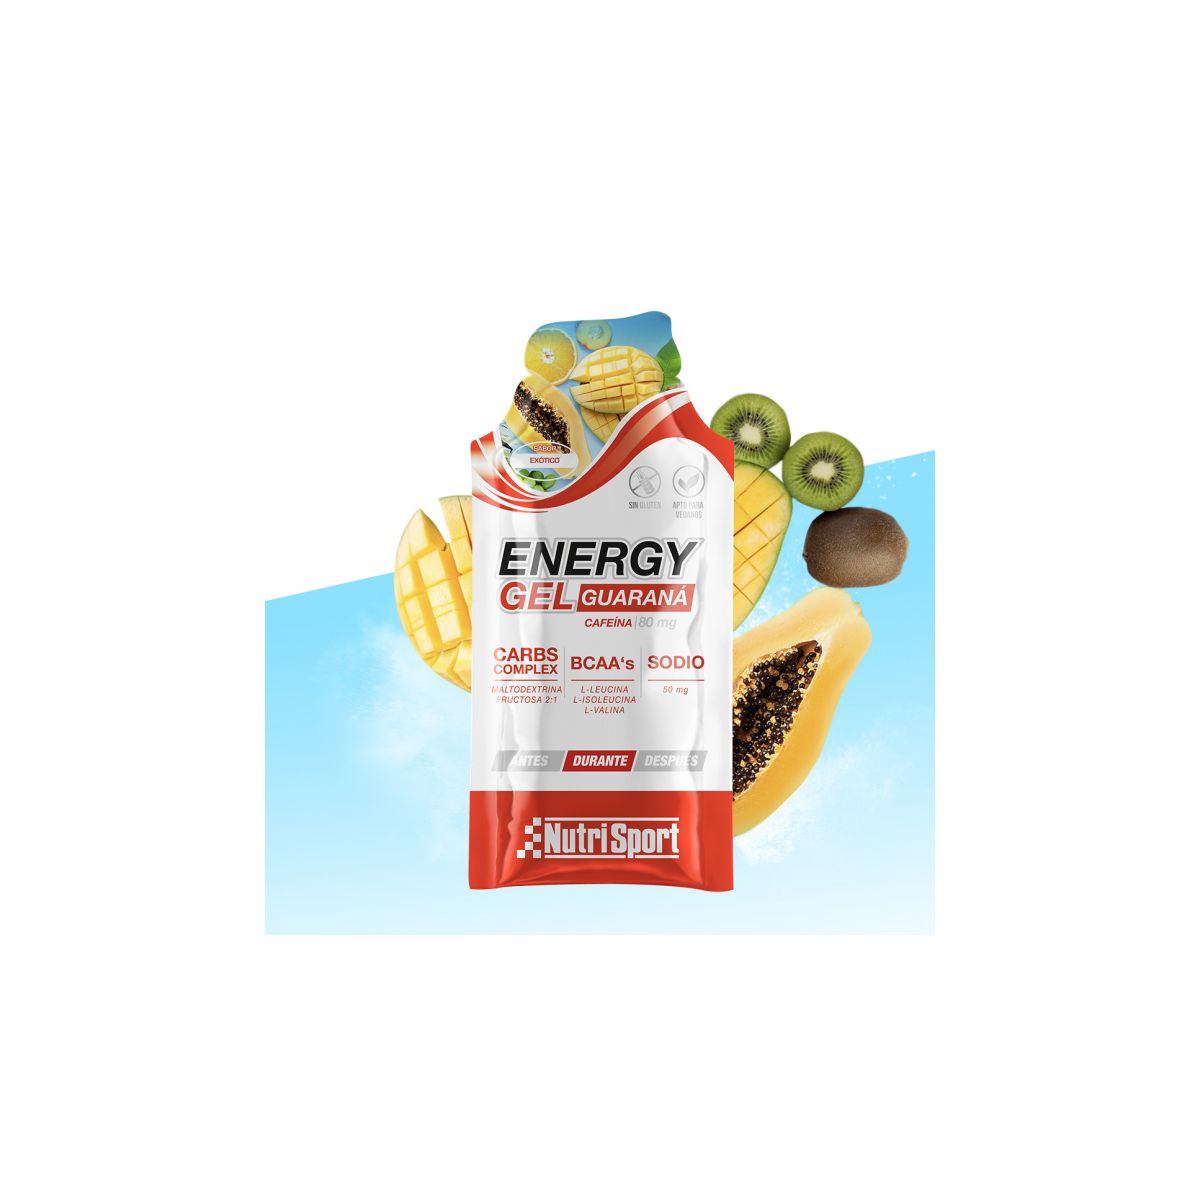 Energy Gel para ciclismo de Nutrisport con Guaraná de 40 gr sabor cola cereza sabor exótico